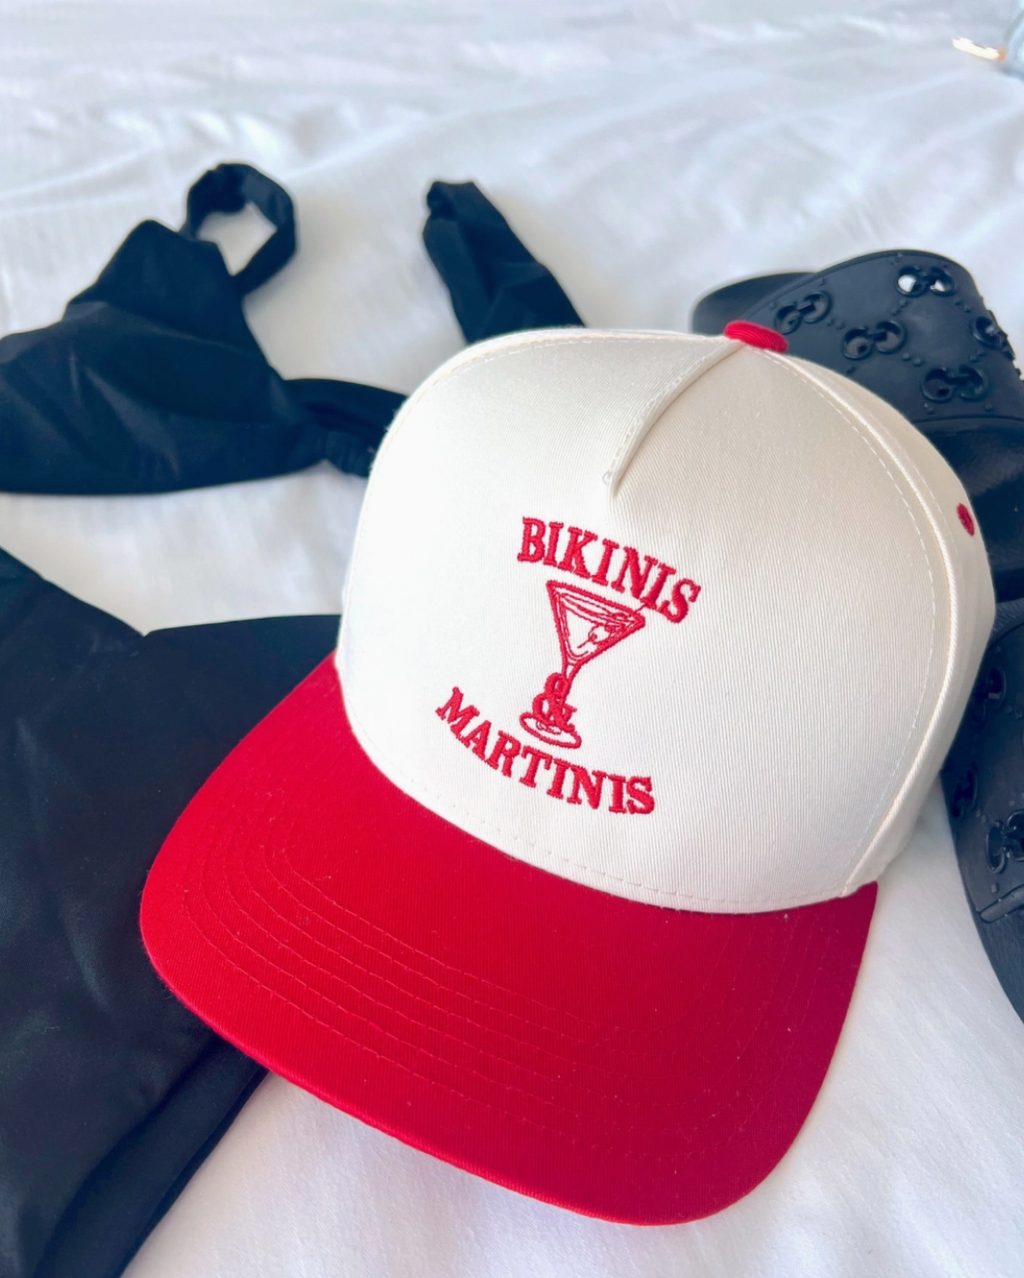 Bikini & Martinis Trucker Hat